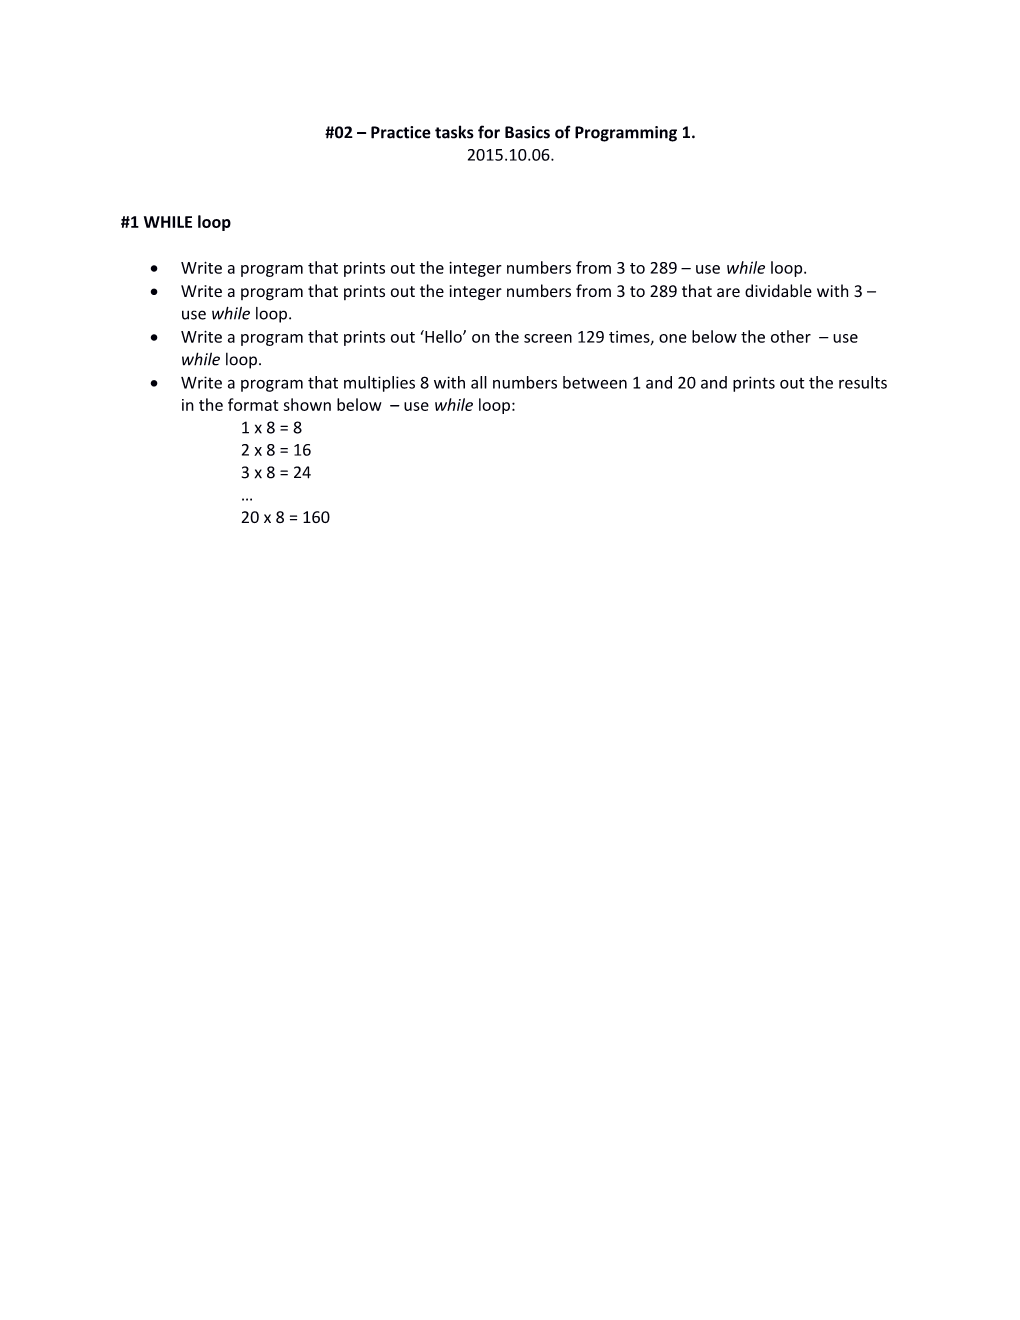 02 Practice Tasks for Basics of Programming 1. 2015.10.06